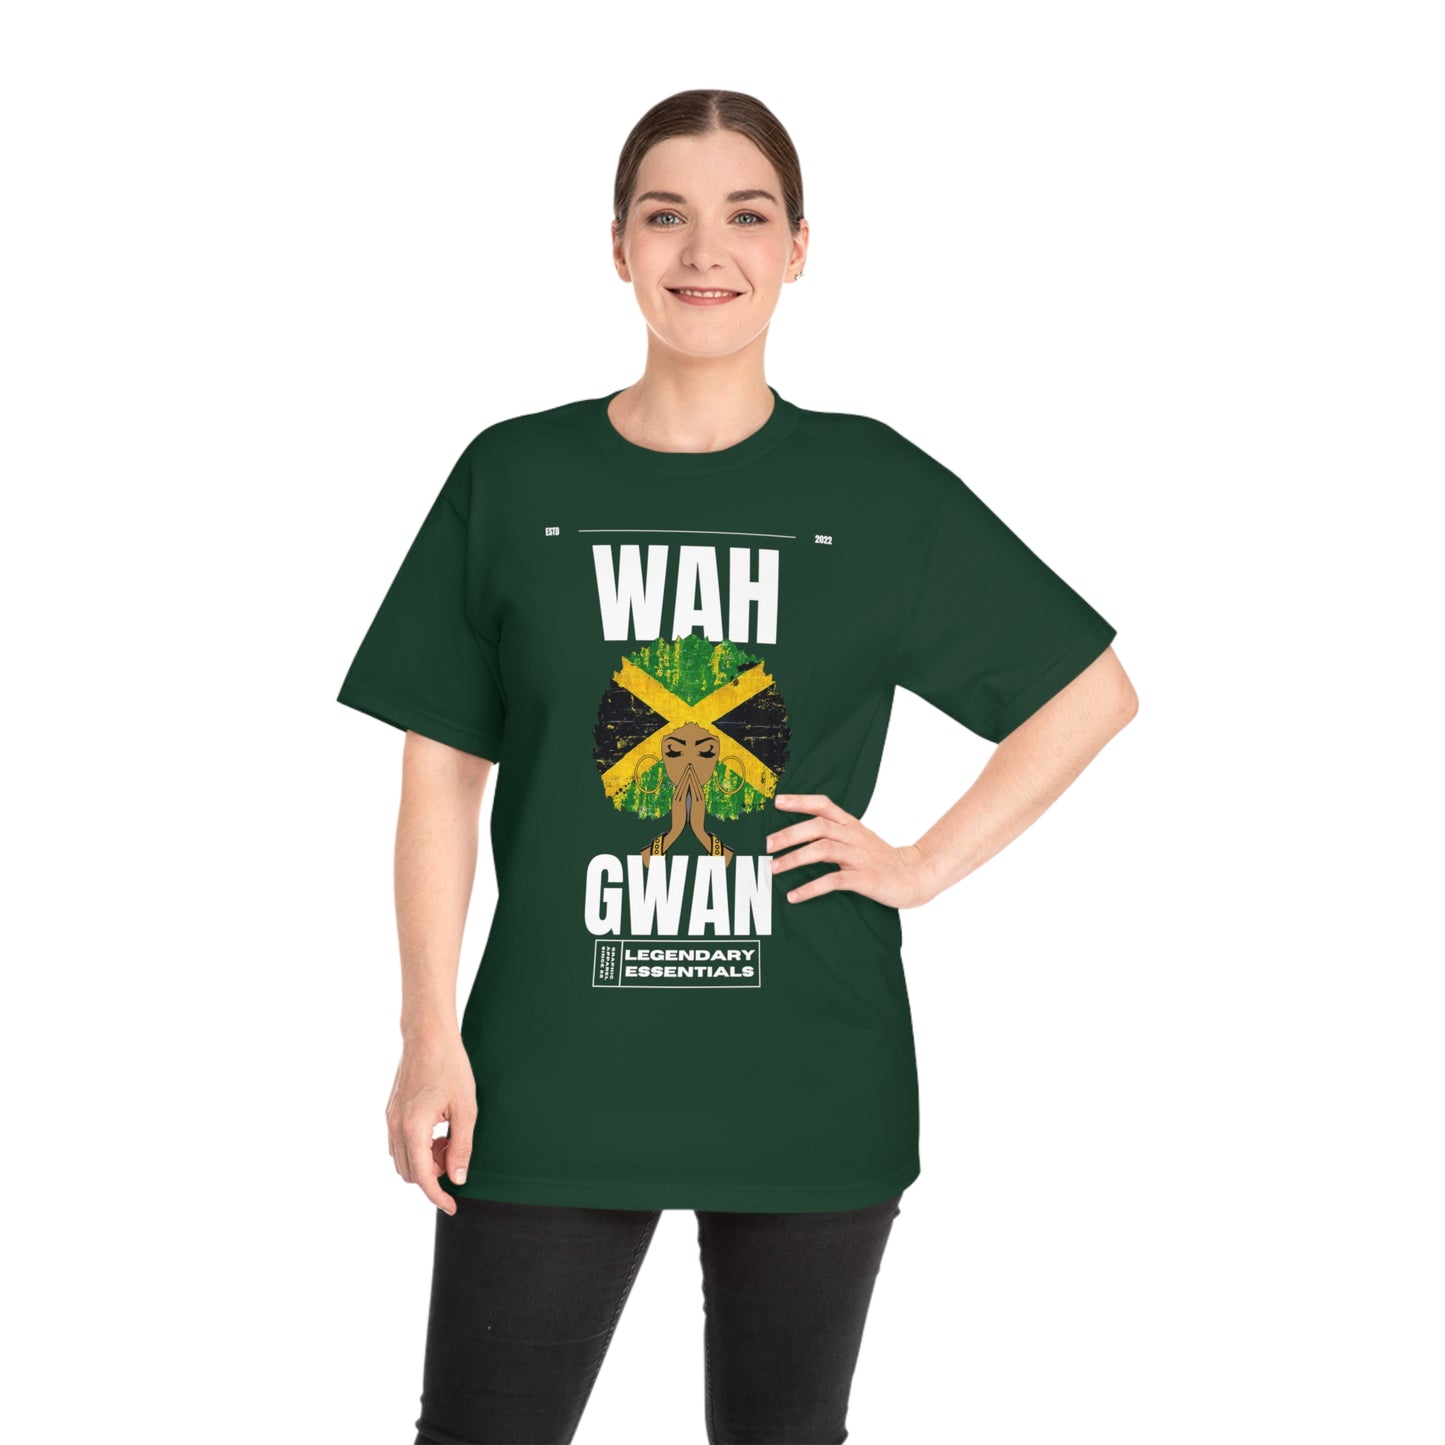 Wah Gwan T-shirt